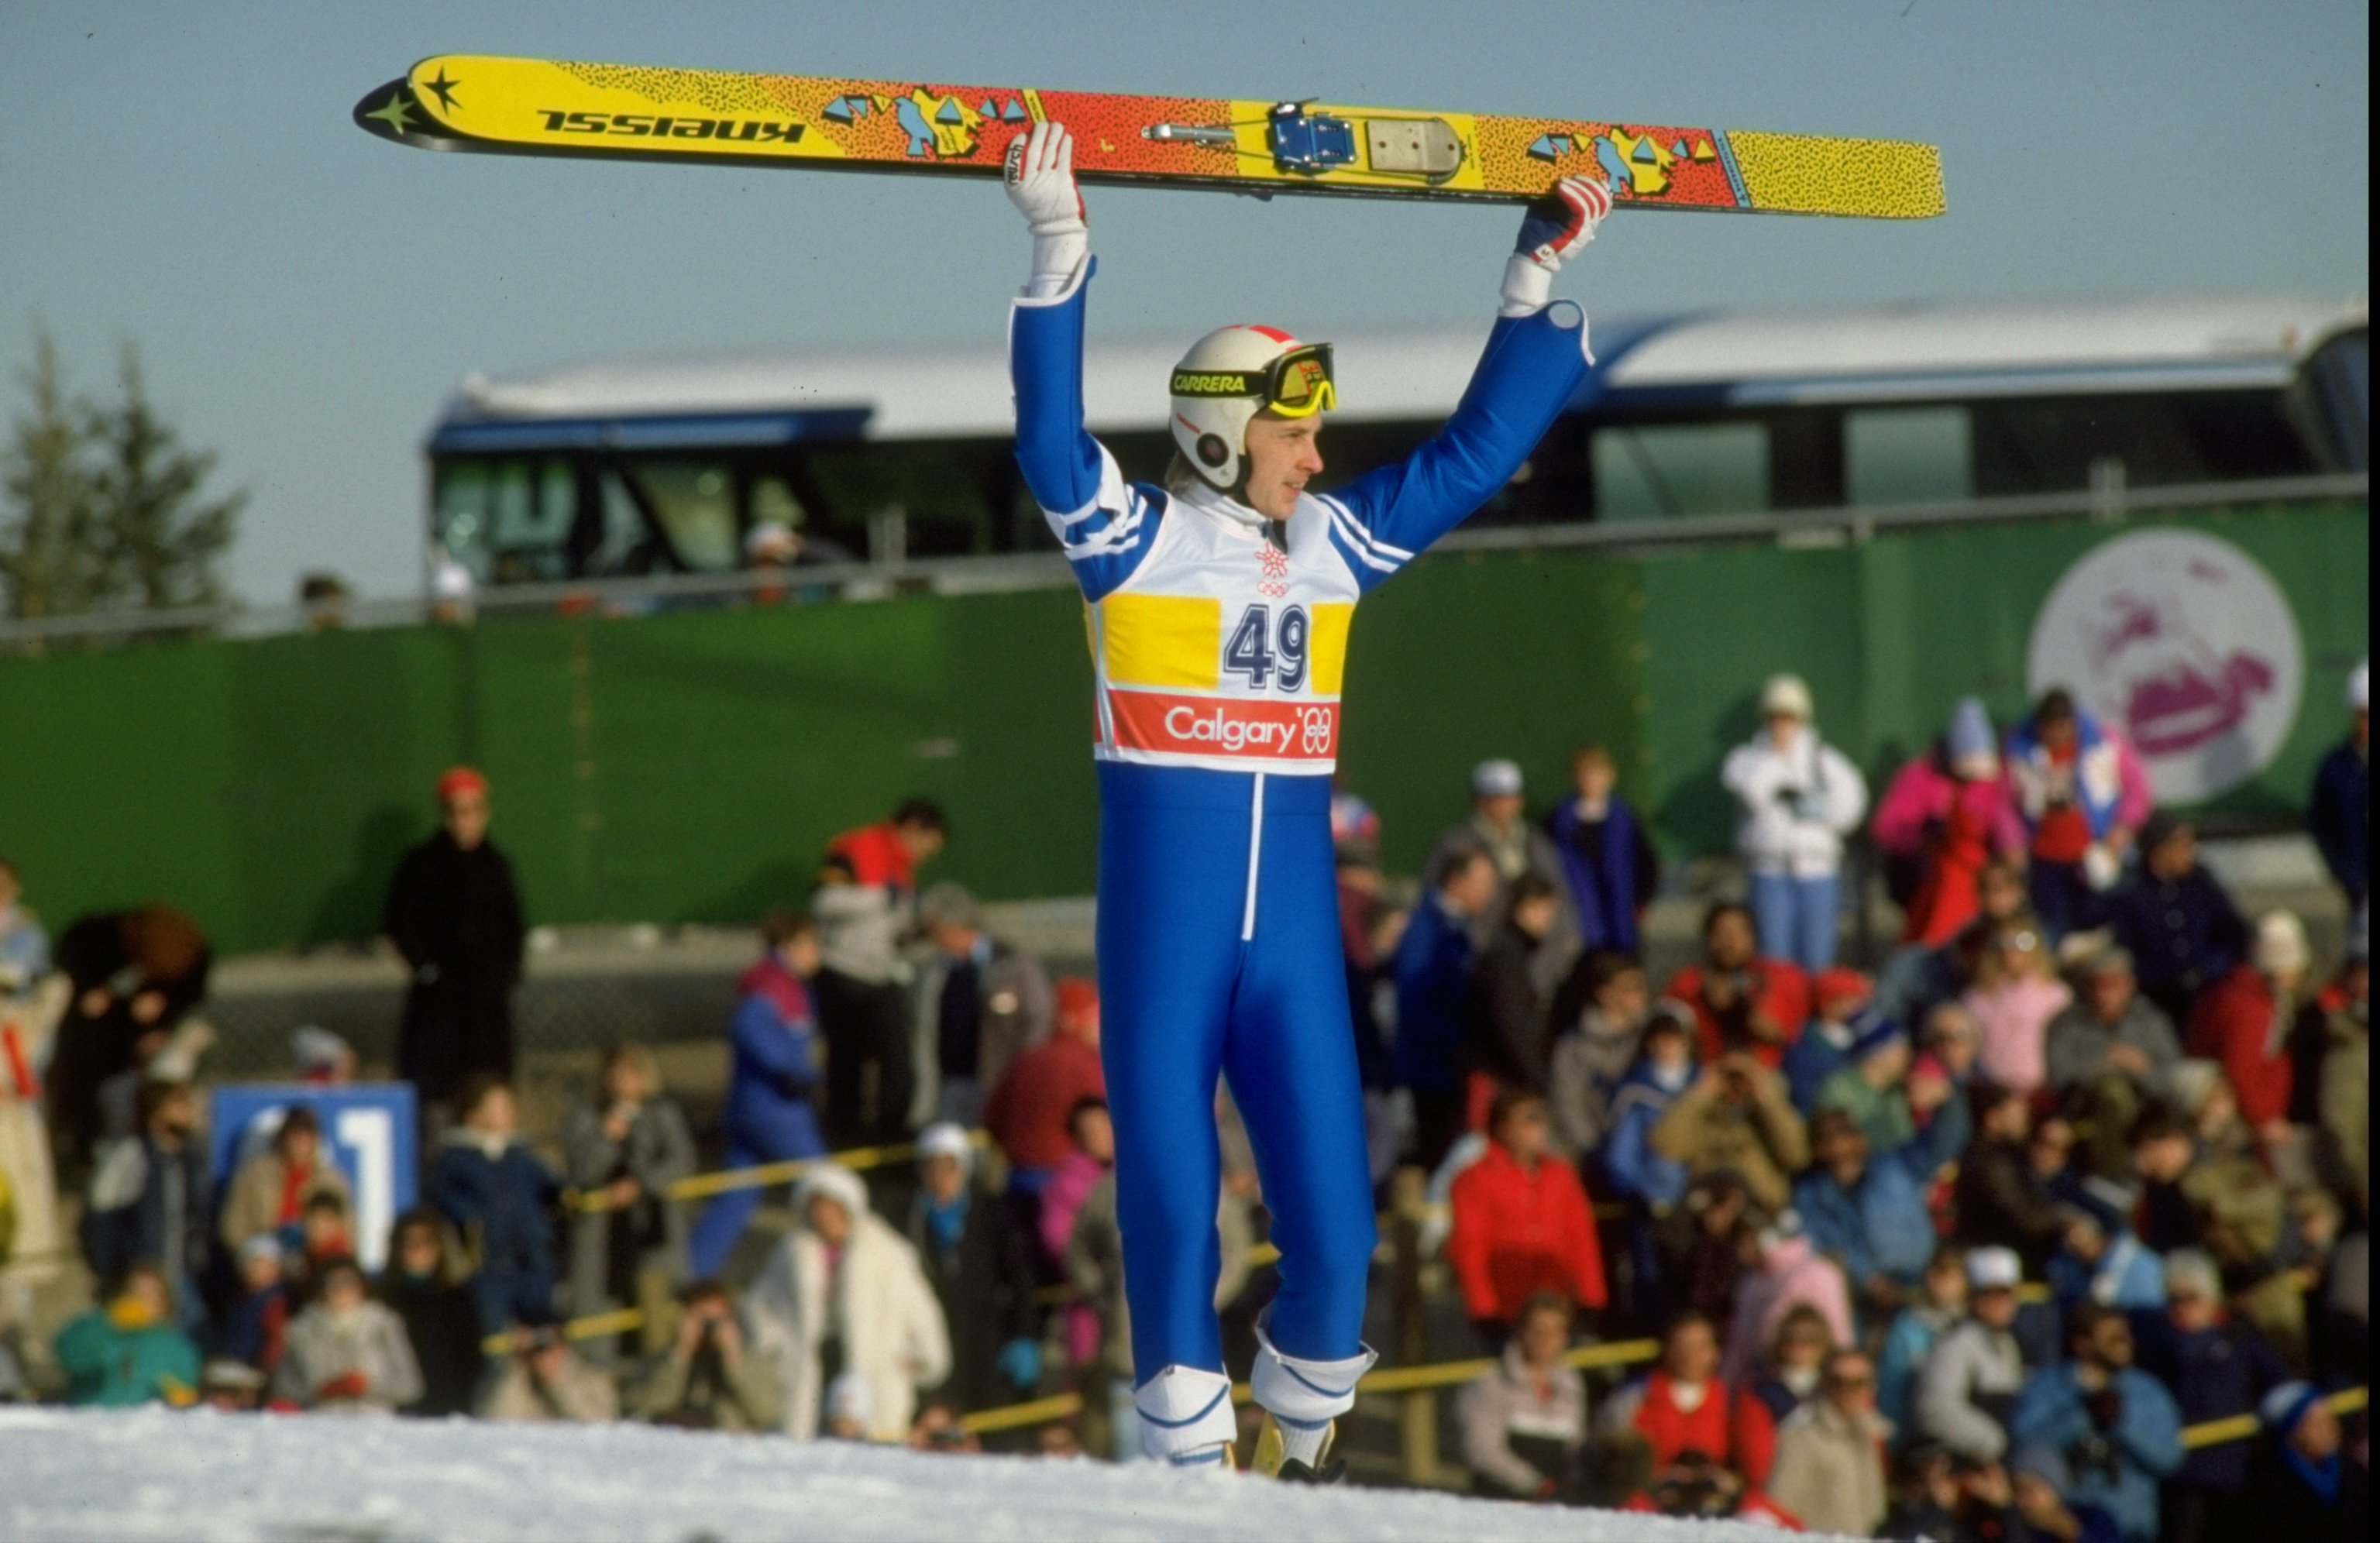 23 février 1988 : Matti Nykanen, Finlandais, brandit son ciel après l'épreuve de saut à ski de 90 mètres aux Jeux Olympiques d'hiver de 1988 à Calgary, Canada. Nykanen remporte la médaille d'or avec un saut de 224 mètres. \ Crédit obligatoire : Allsport UK /Allsport